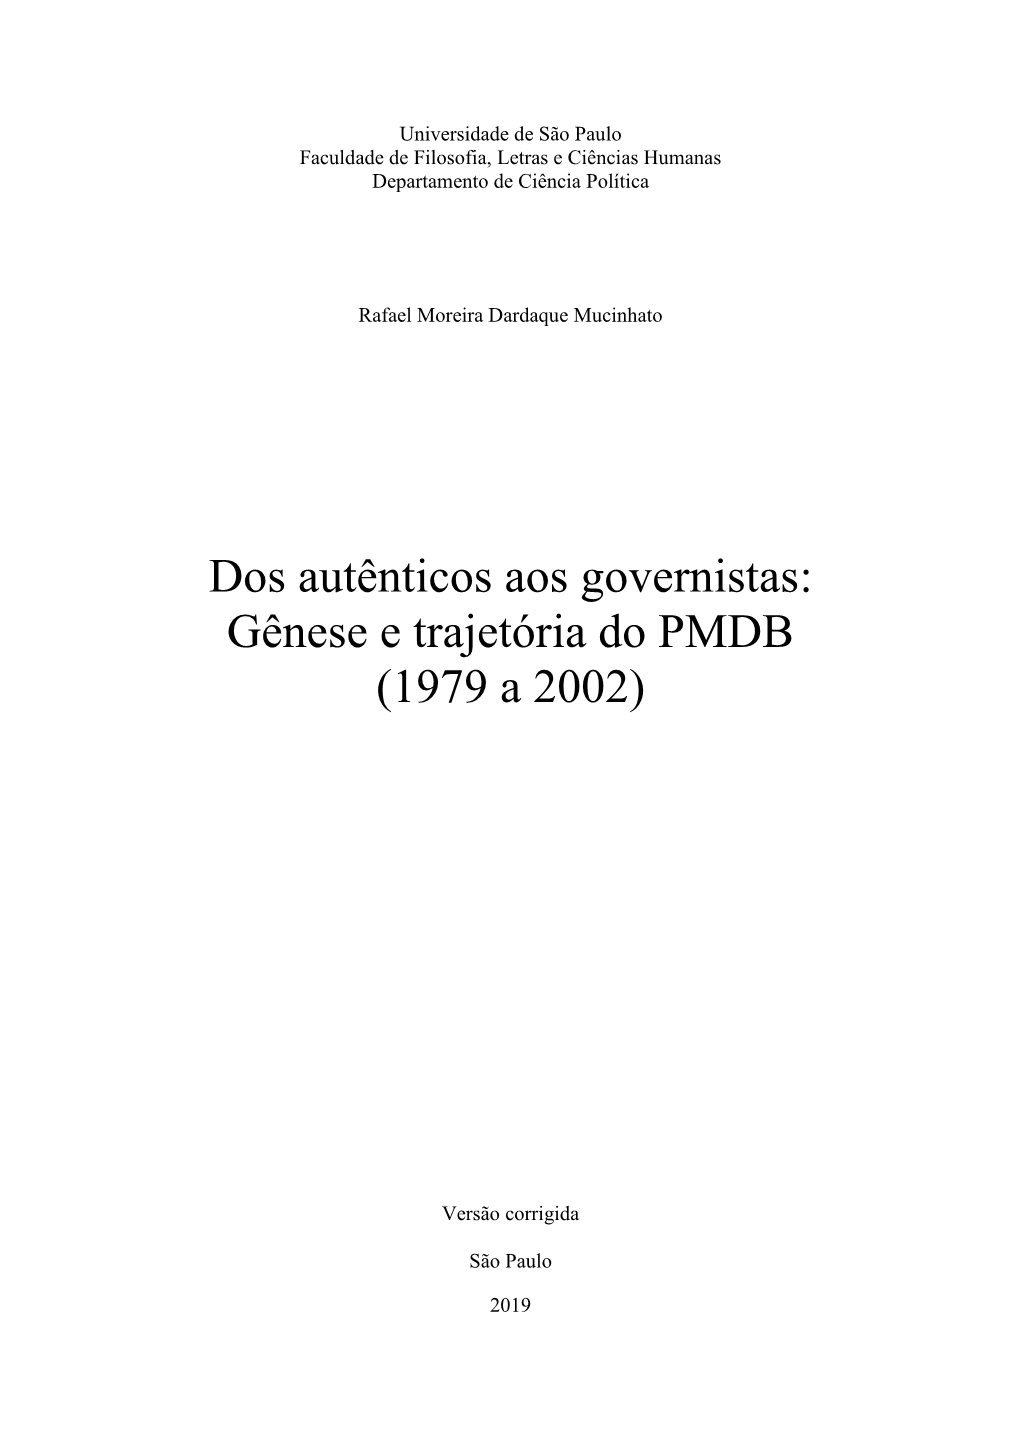 Dos Autênticos Aos Governistas: Gênese E Trajetória Do PMDB (1979 a 2002)